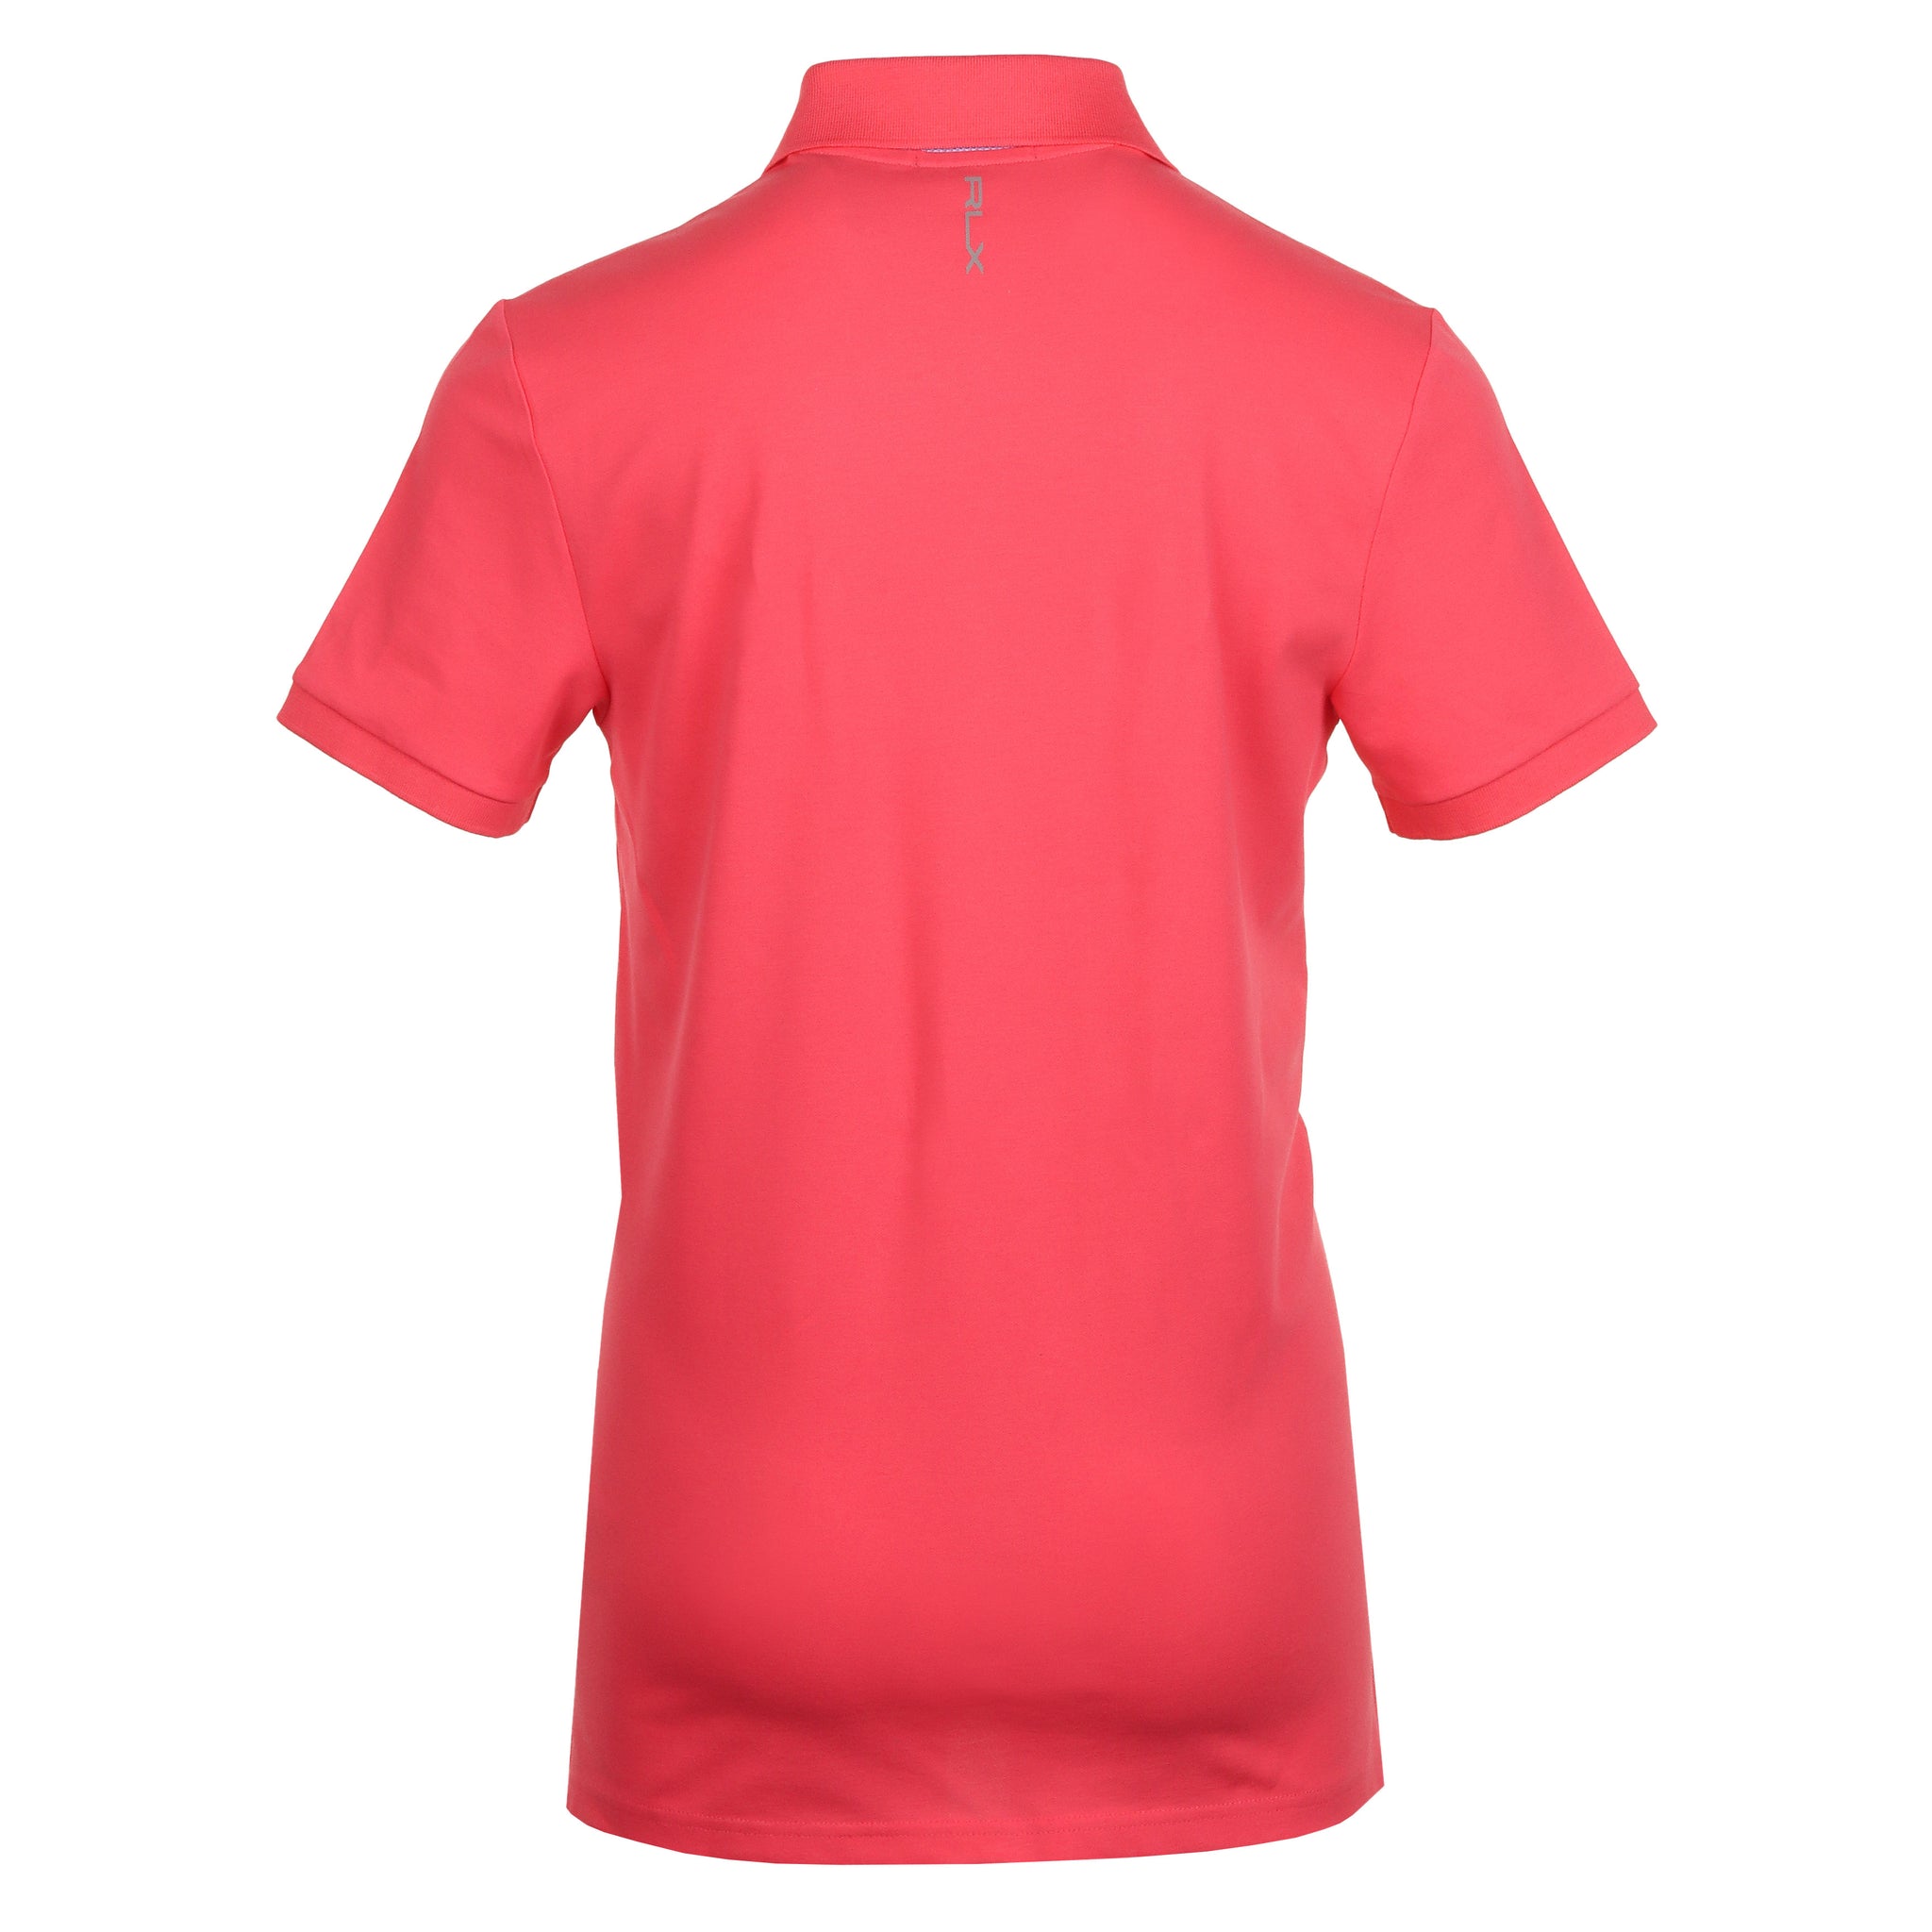 RLX Ralph Lauren Buttonless Pique Polo Shirt